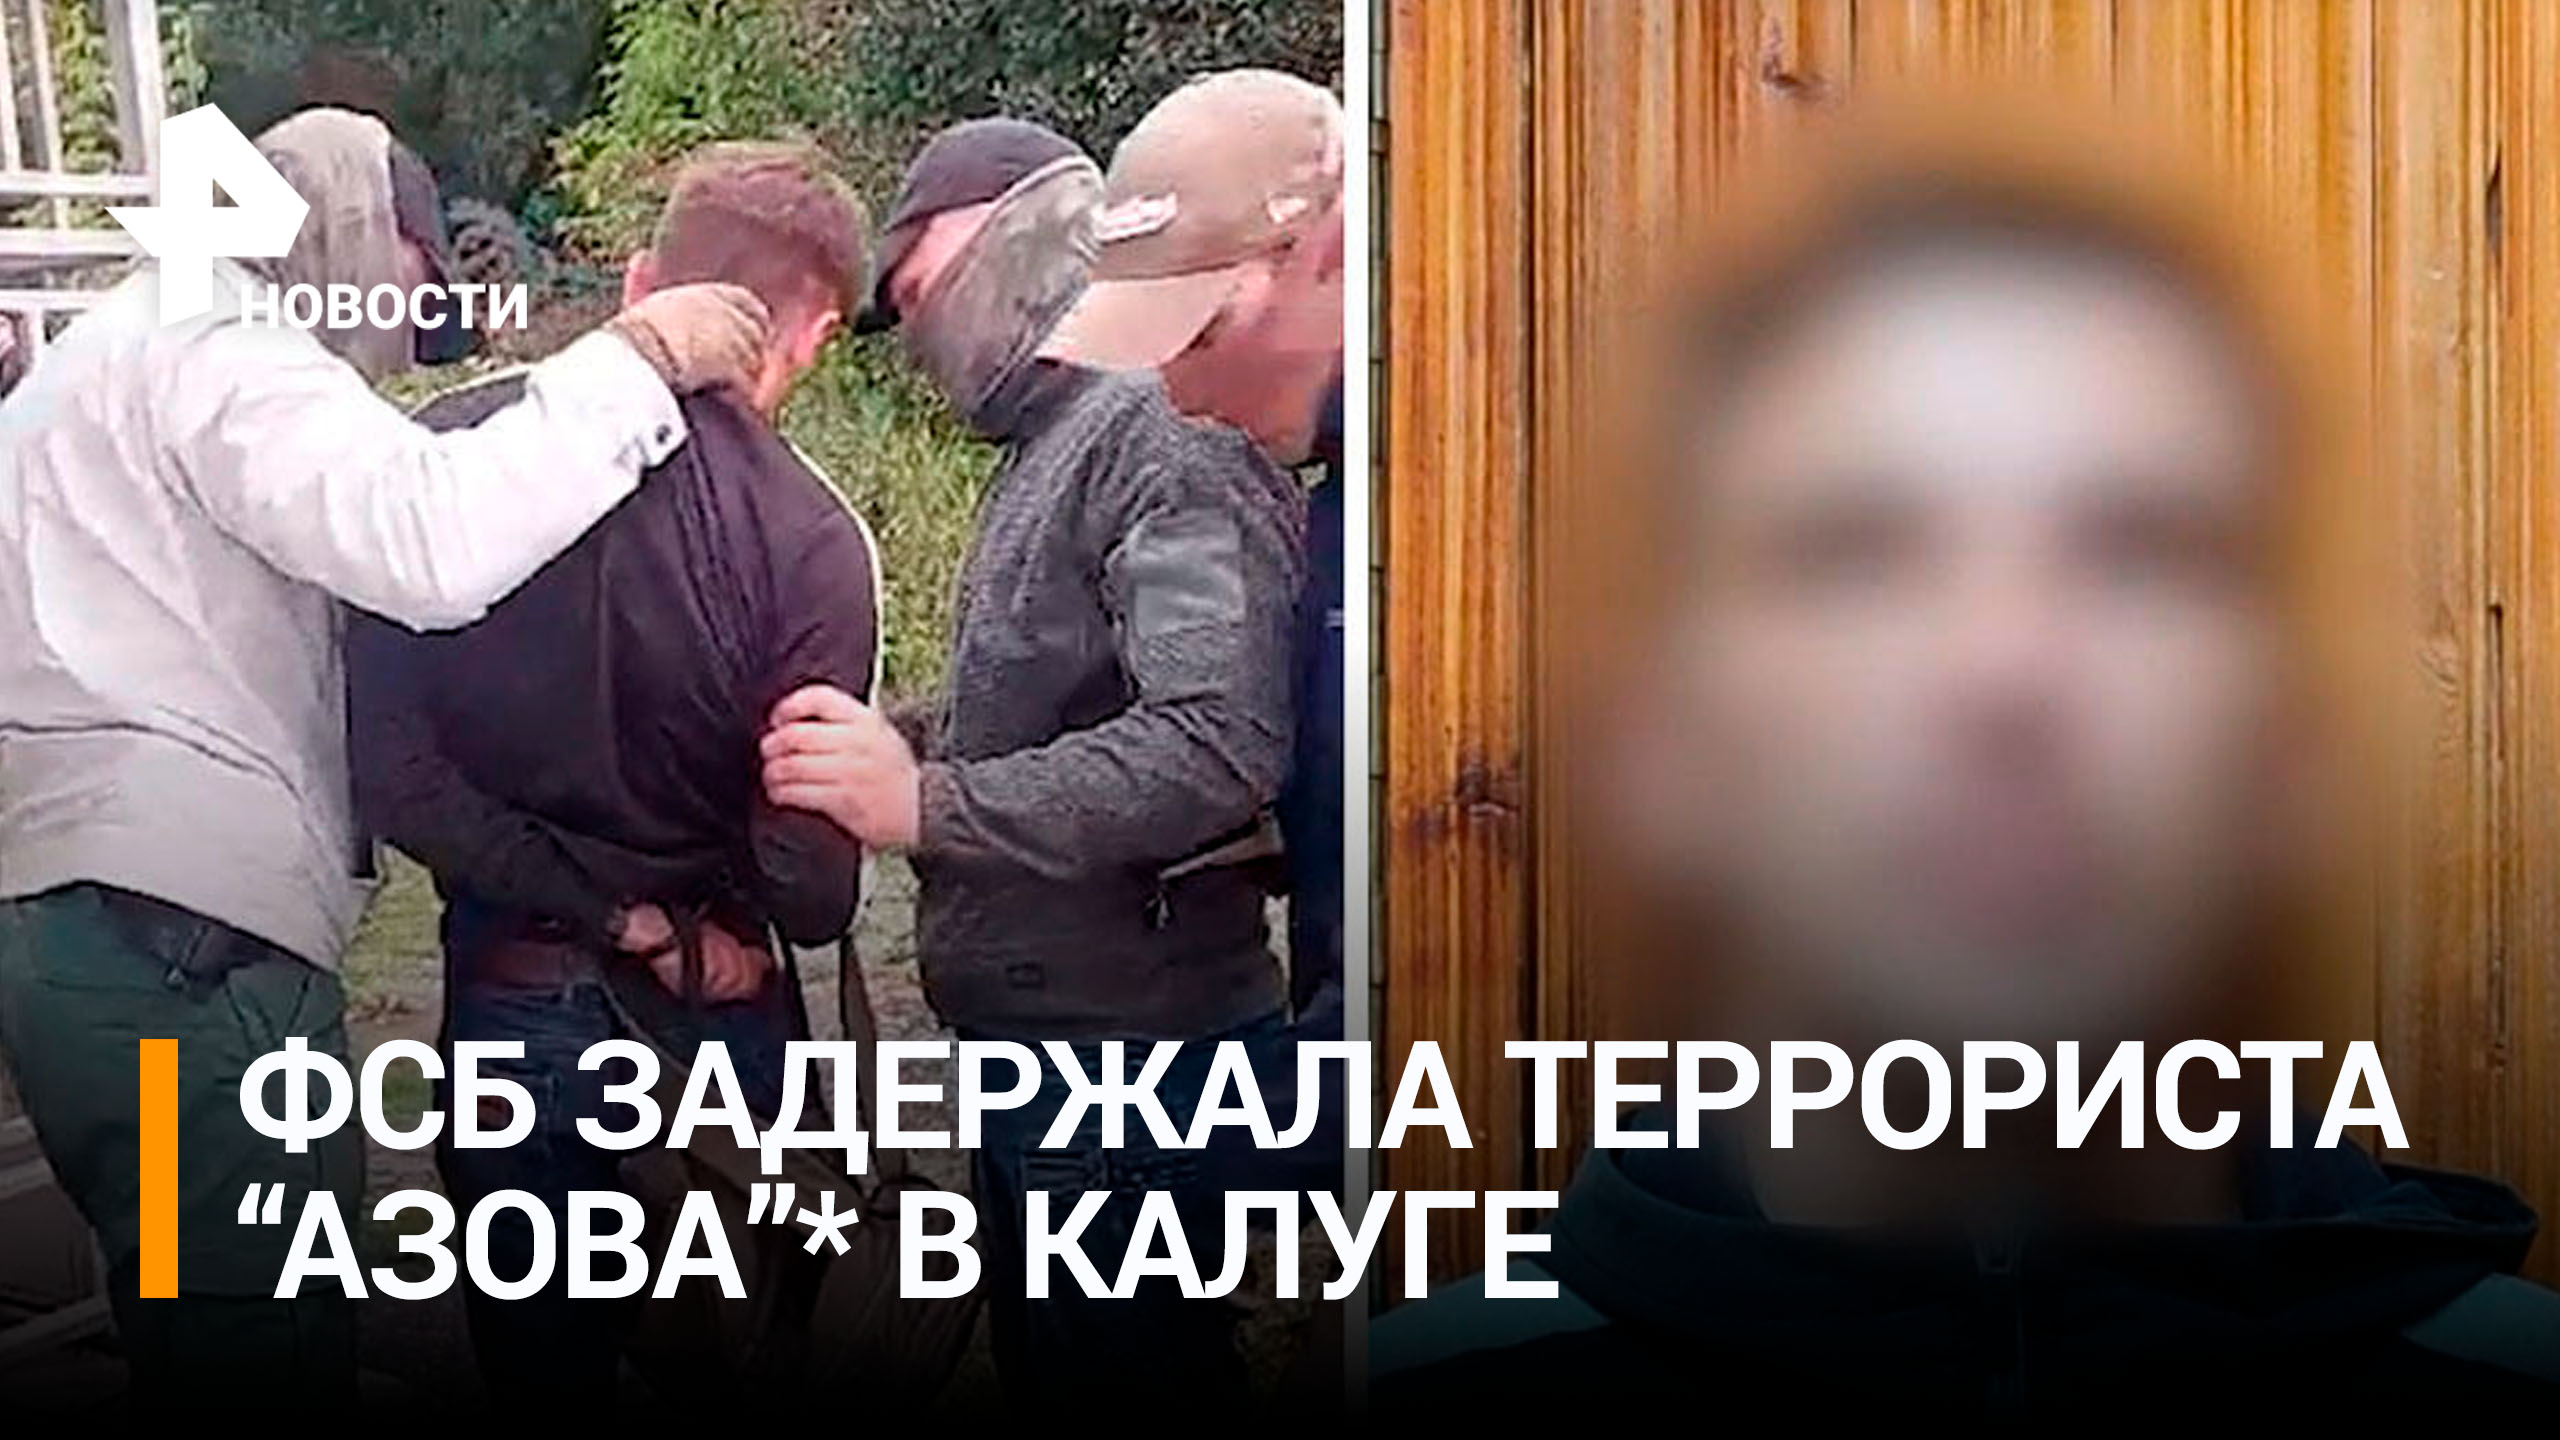 ФСБ задержала сторонника "Азова"*, готовившего теракт в Калуге / РЕН Новости